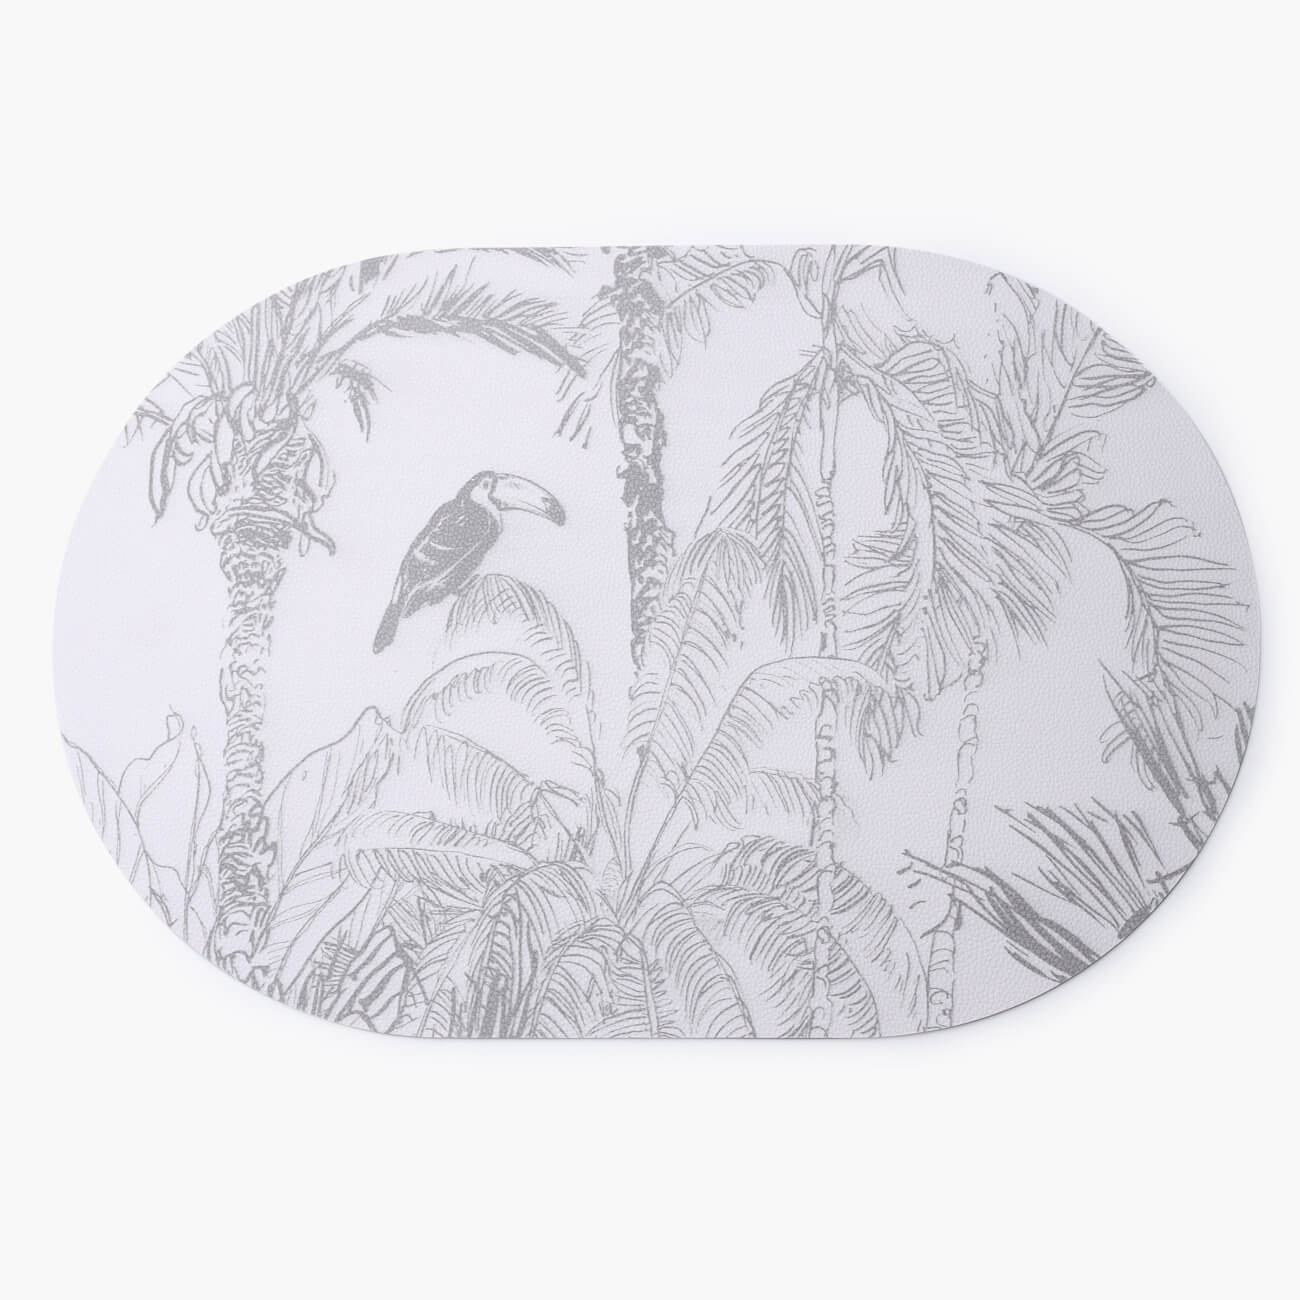 Салфетка под приборы, 30x45 см, ПВХ, овальная, белая, Тропический лес, Rock print